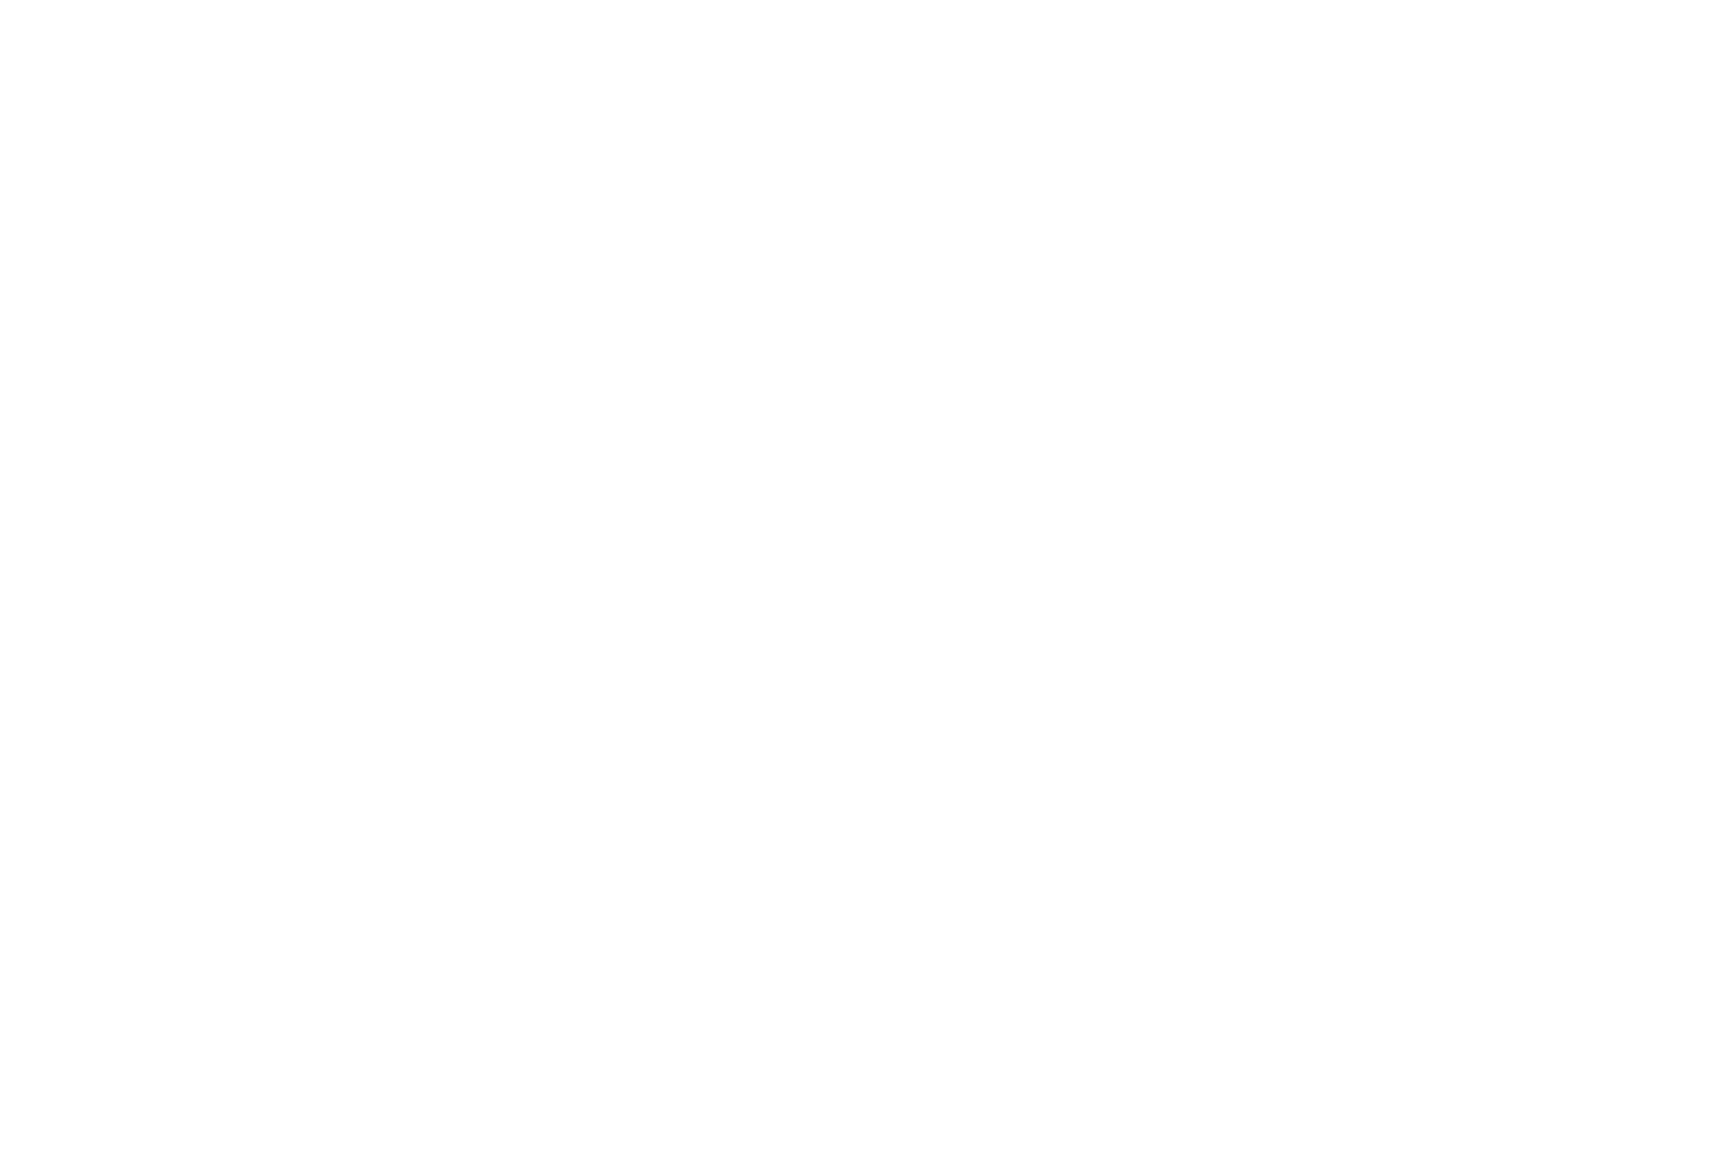 WINNER  2020 - BILBAO SERIESLAND - RISING AMETS (2).png